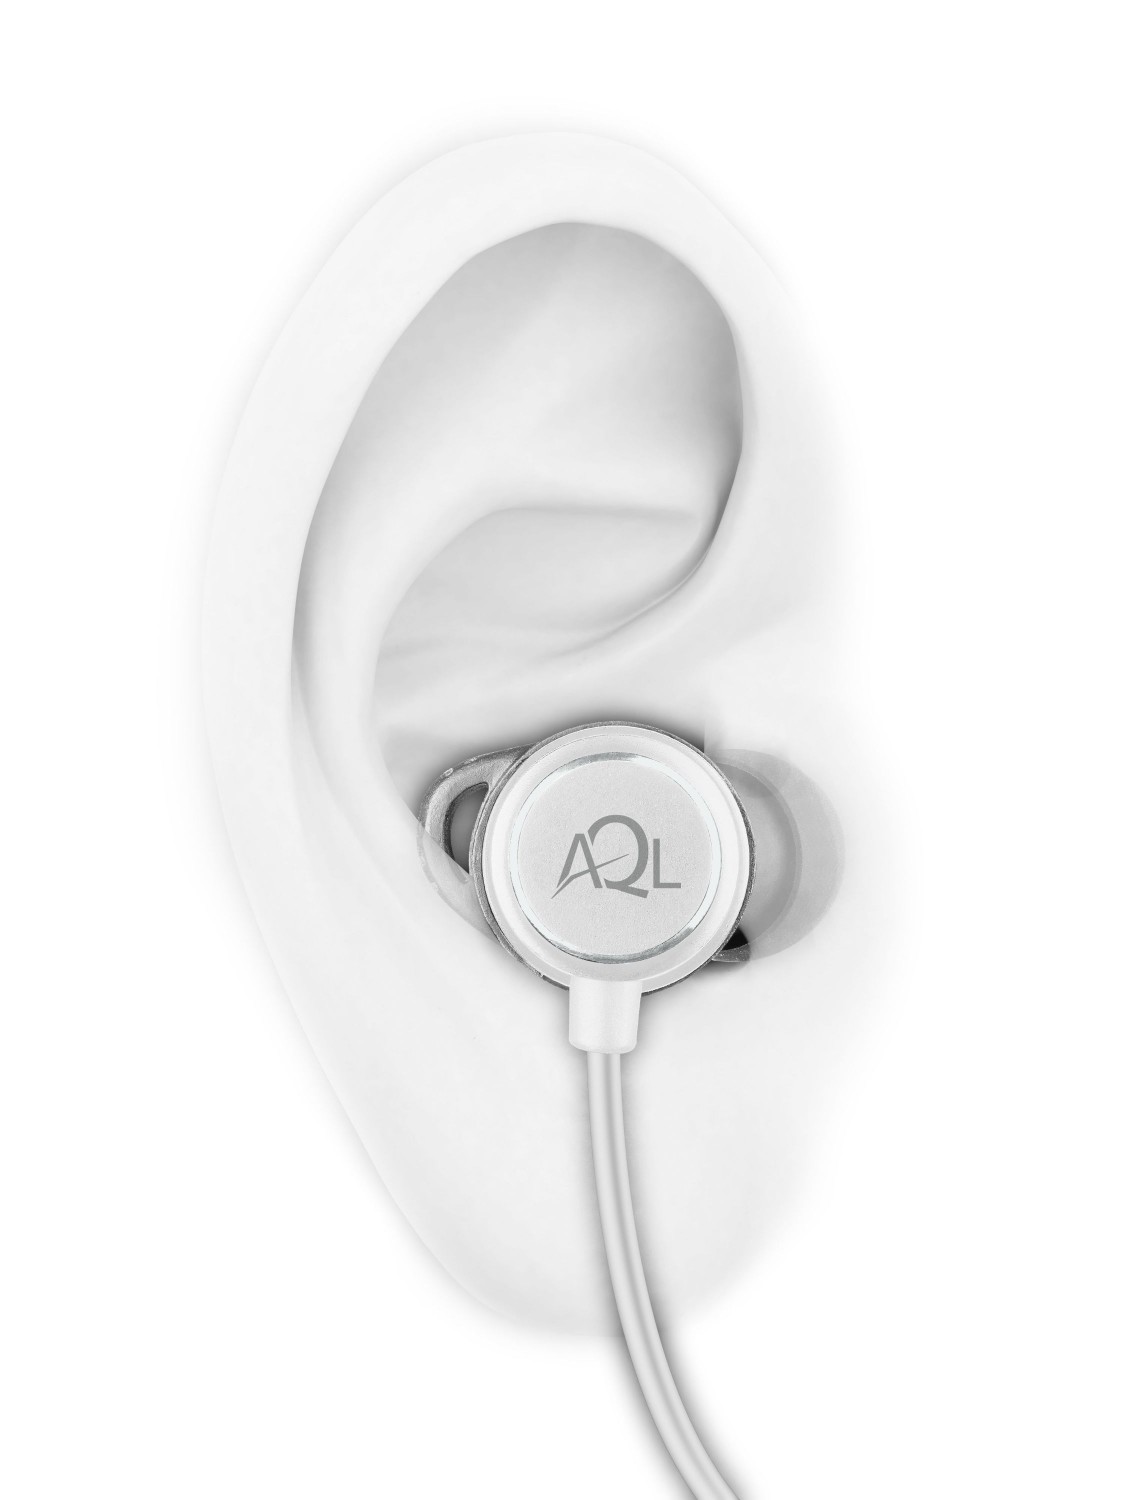 Sportovní bezdrátová sluchátka Cellularline Speed, AQL® certifikace, bílá